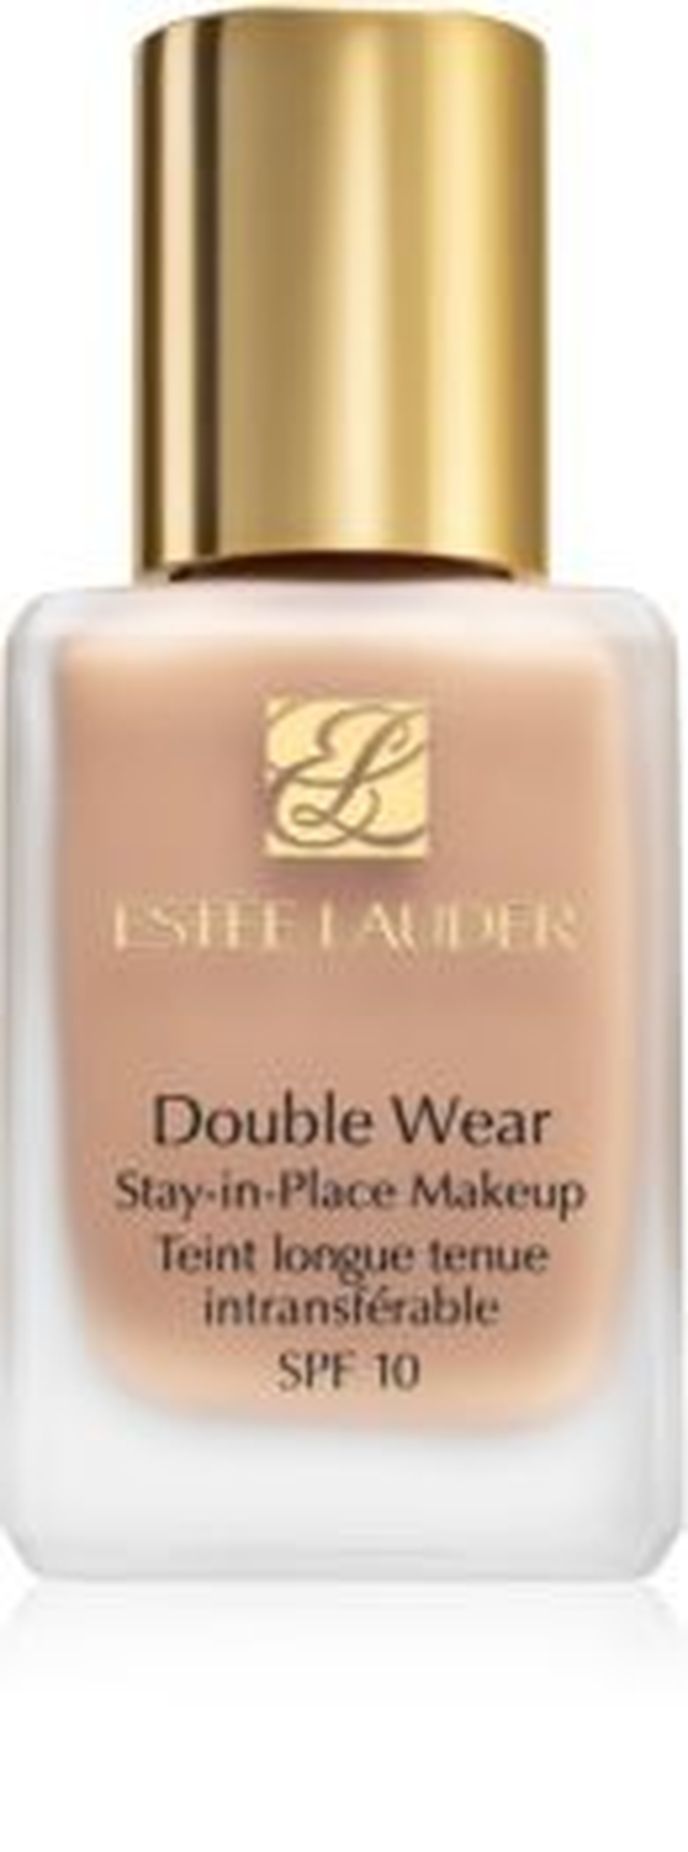 Dlouhotrvající make-up s SPF10, Double Wear Stay-in-Place, Estée Lauder, notino.cz, 845 Kč